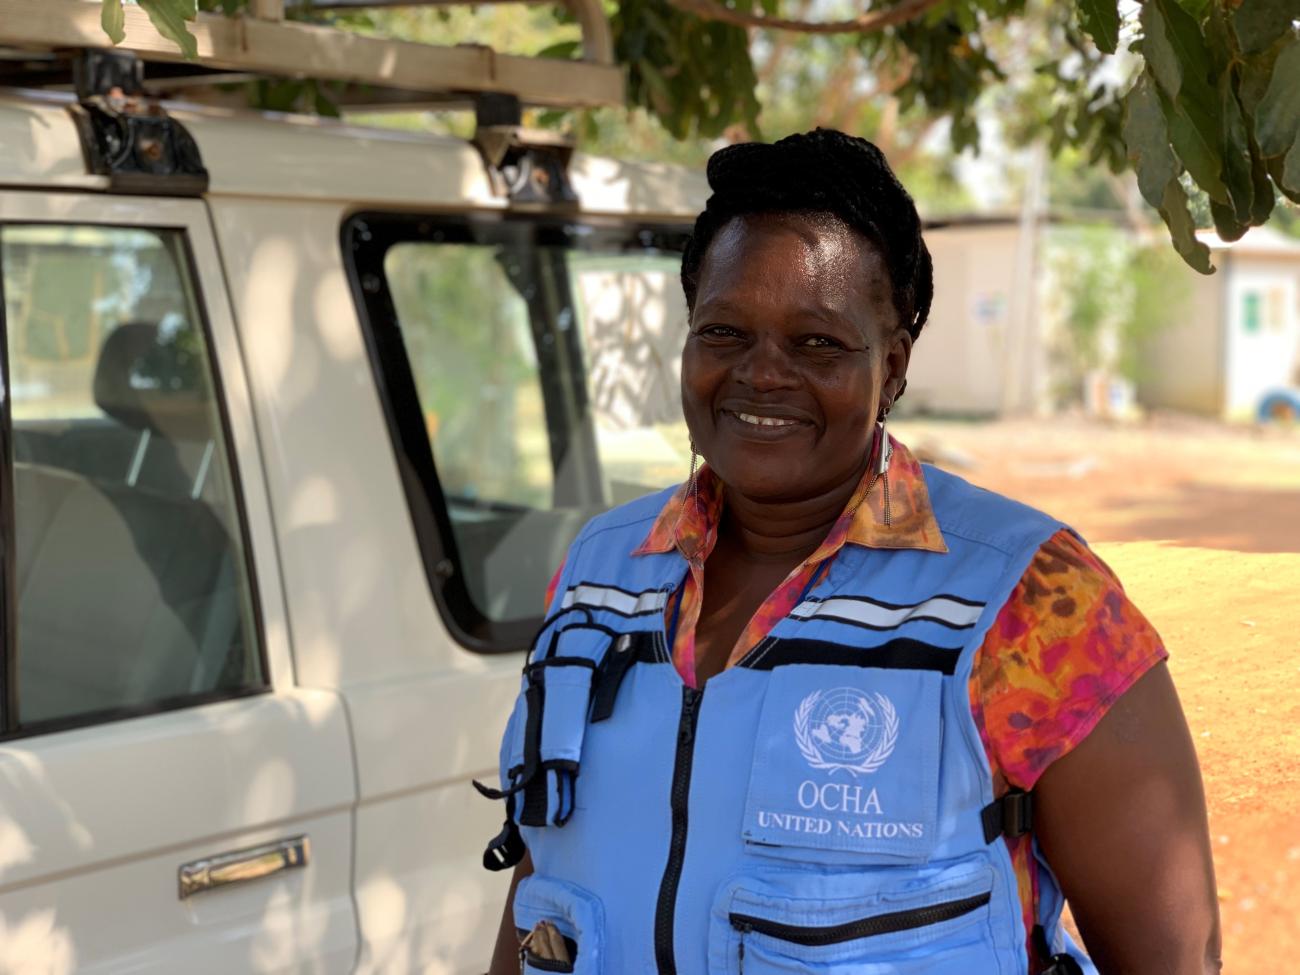 Une femme portant un gilet bleu clair de l'OCHA, le Bureau des Nations Unies pour la coordination des affaires humanitaire, sourit à la caméra.